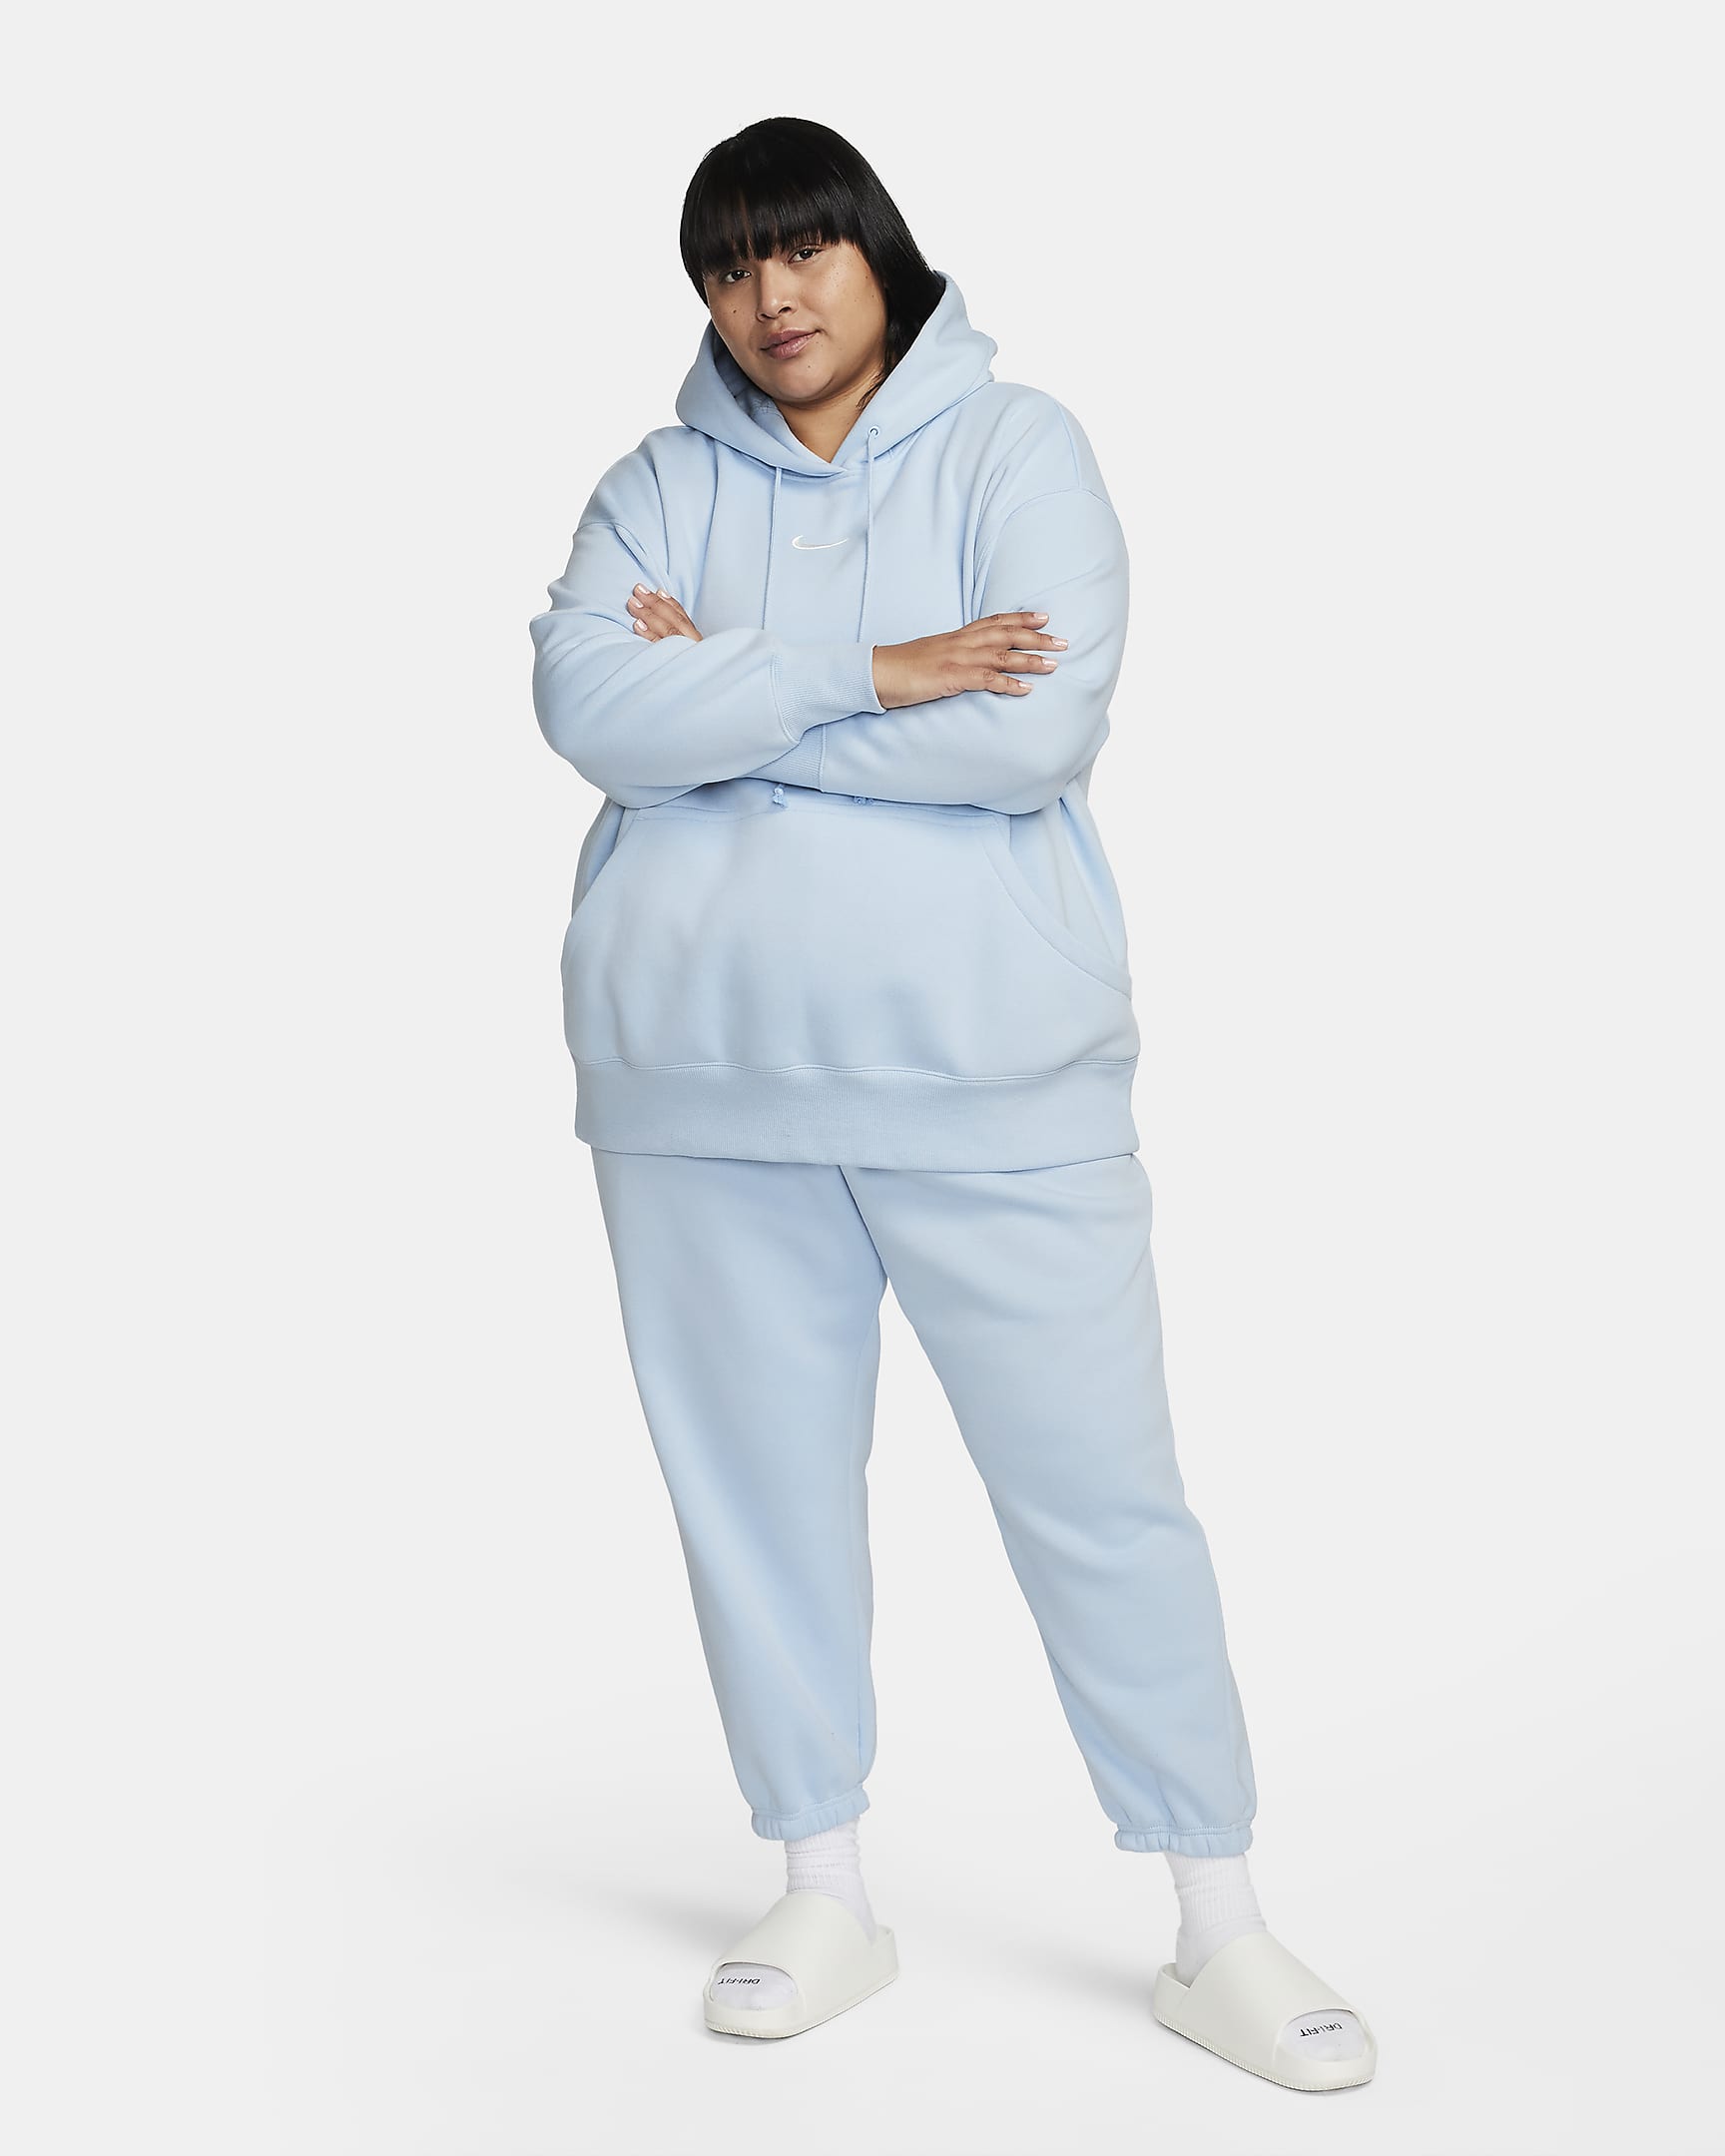 Nike Sportswear Phoenix Fleece Women's Oversized Pullover Hoodie (Plus ...